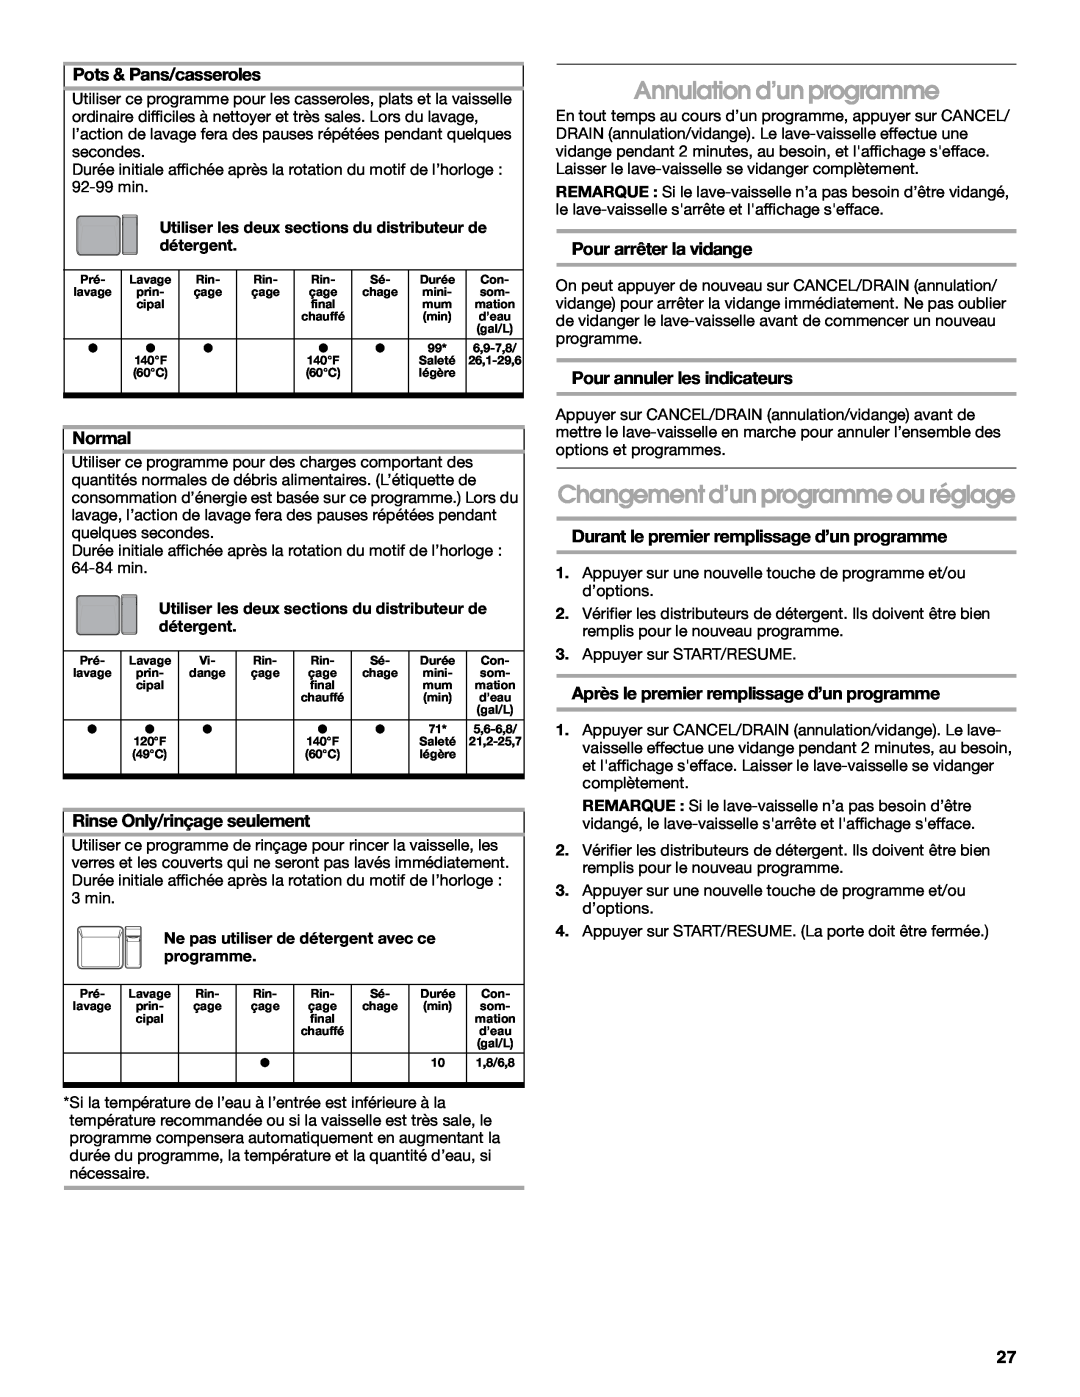 Roper RUD8050S manual Annulation d’un programme, Changement d’un programme ou réglage, Pots & Pans/casseroles, Normal 